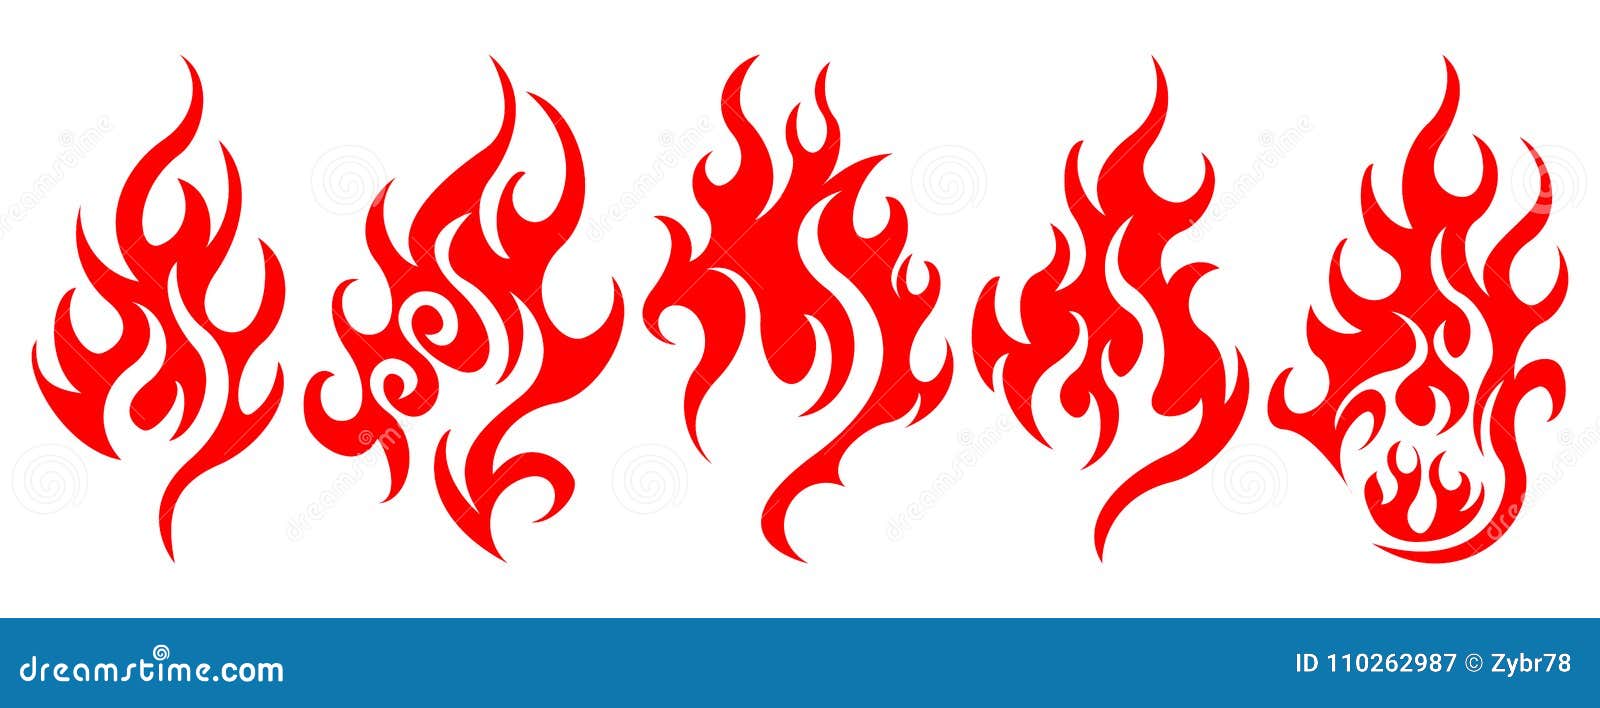 Grupo De Elementos Do Projeto Do Fogo Do Vetor Ilustração do Vetor -  Ilustração de flama, fogueira: 111180620